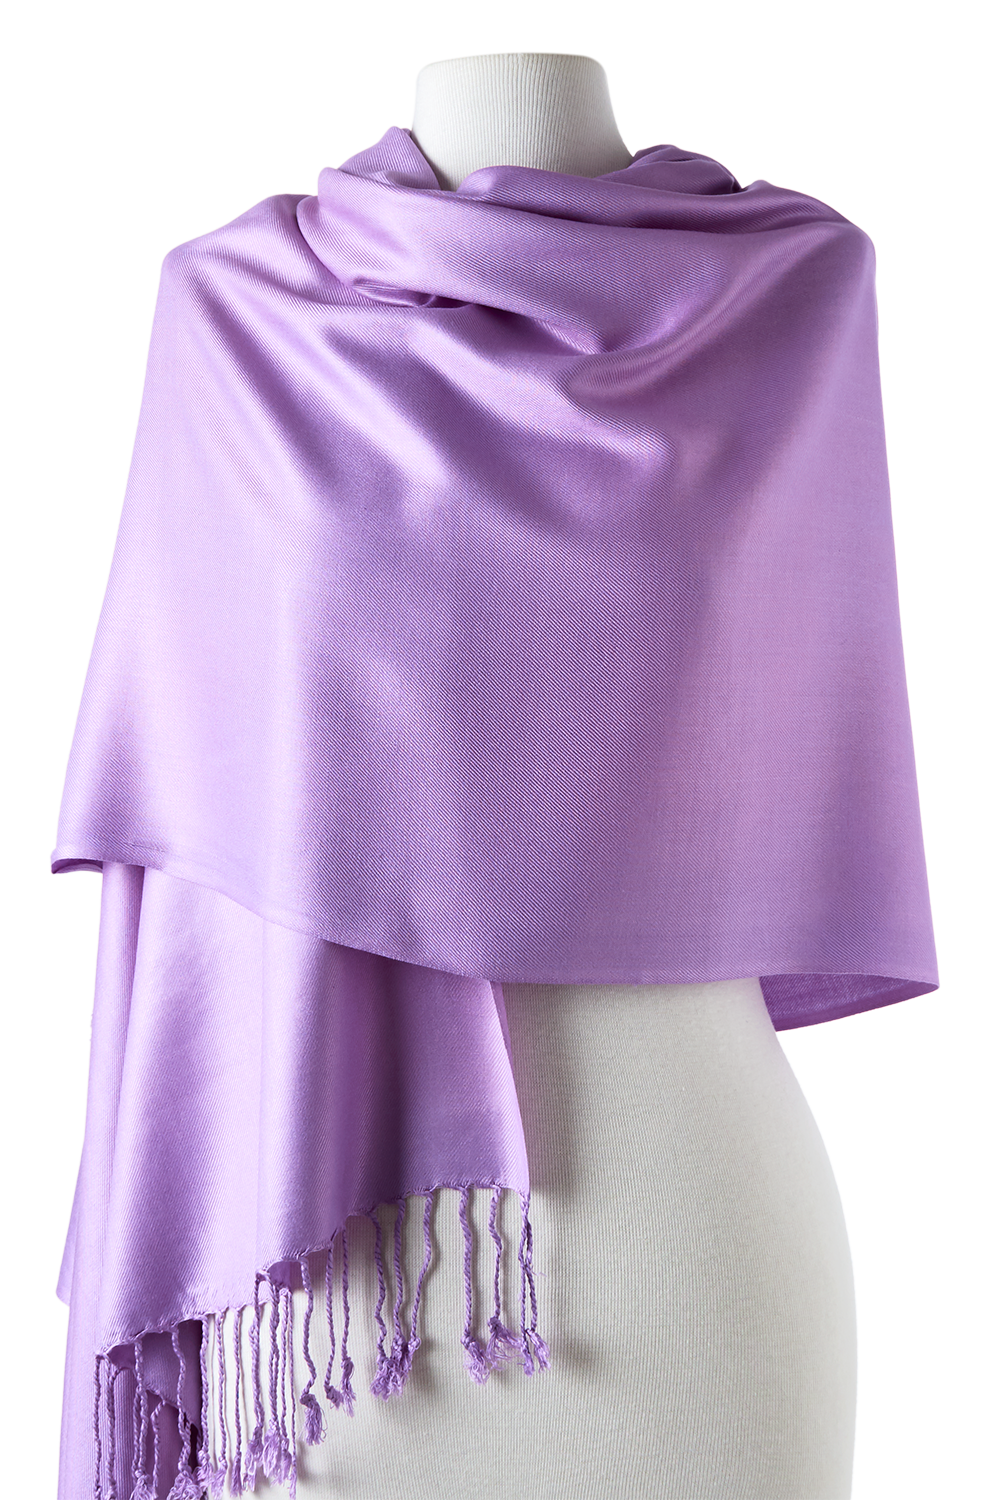 pashmina cachecol de viscose lavanda lilás 70x180cm para festas, casamentos, eventos, frio e inverno